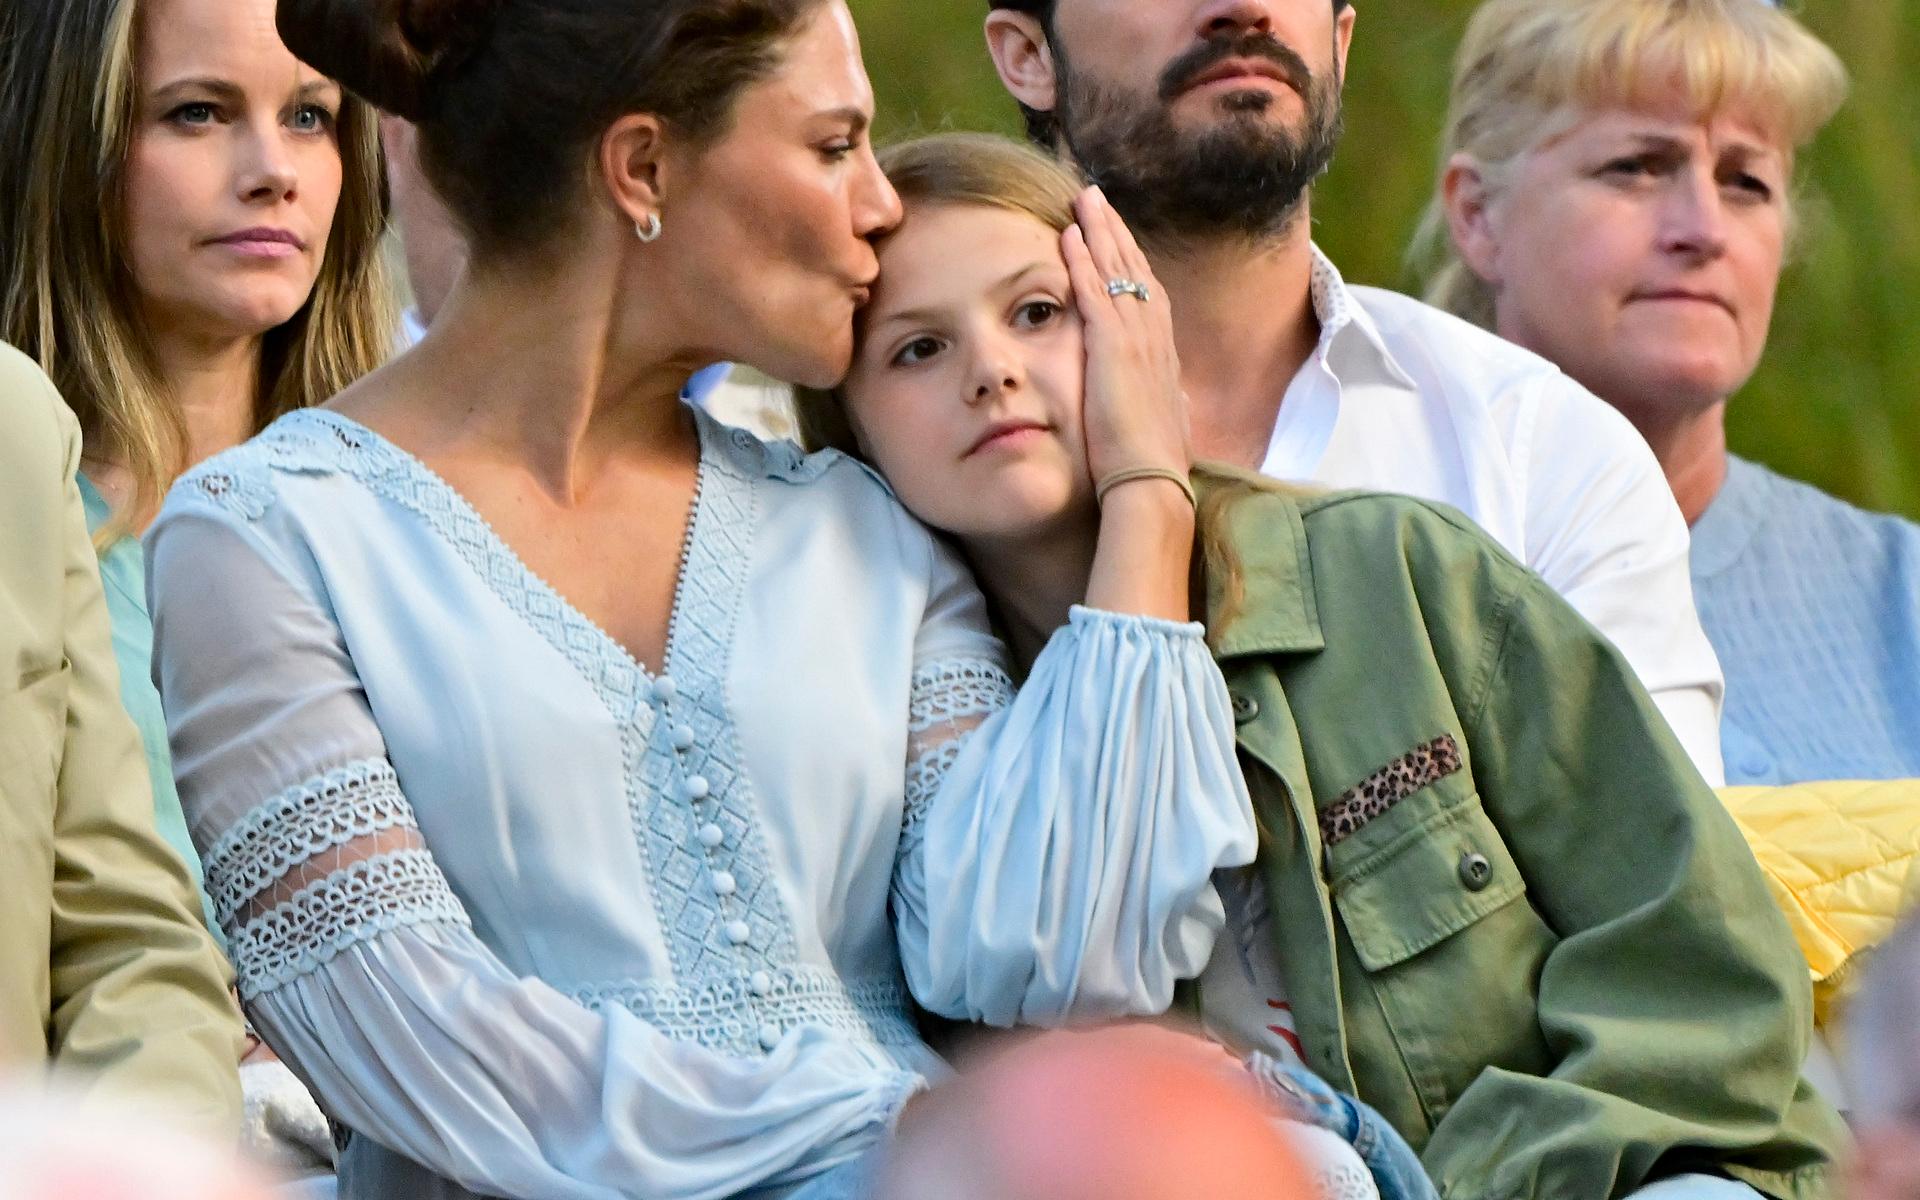 Prinsessan Estelle myser med sin mamma under konserten.